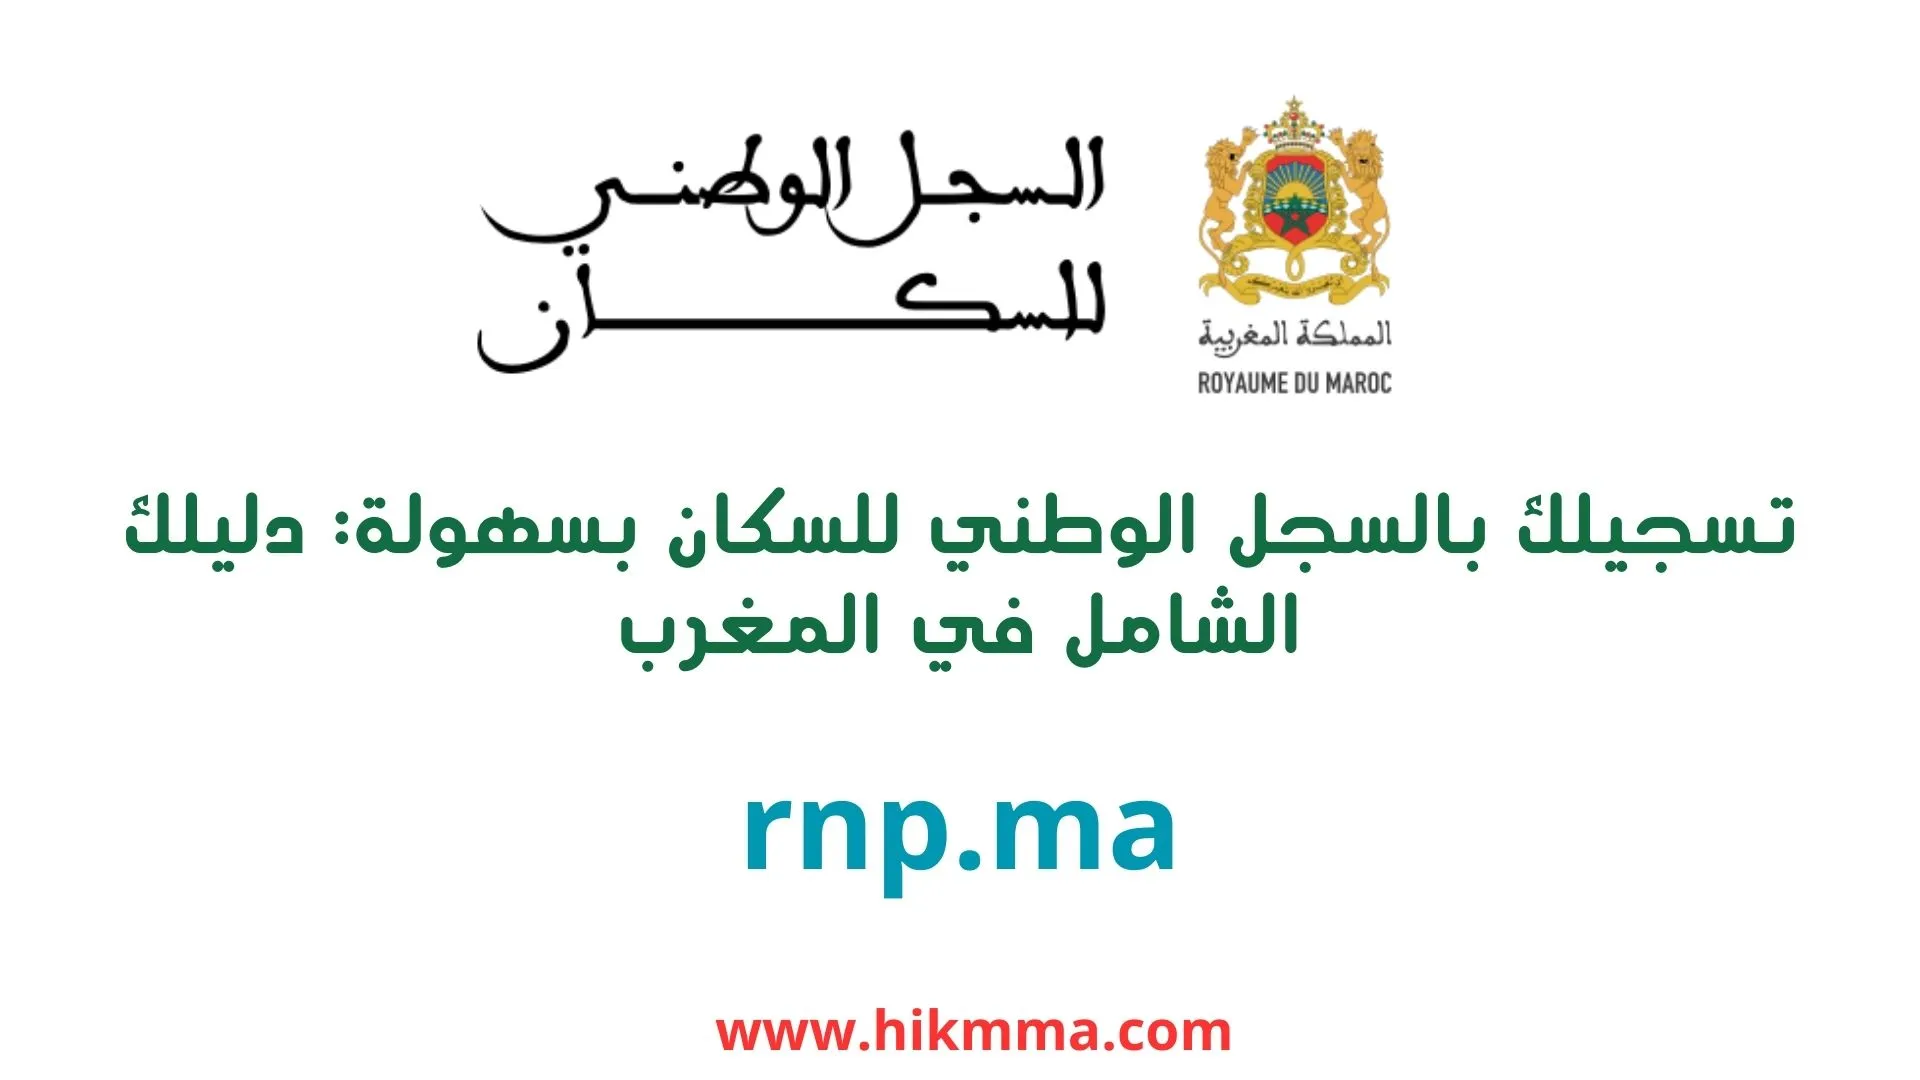 تسجيلك بالسجل الوطني للسكان بسهولة: دليلك الشامل في المغرب